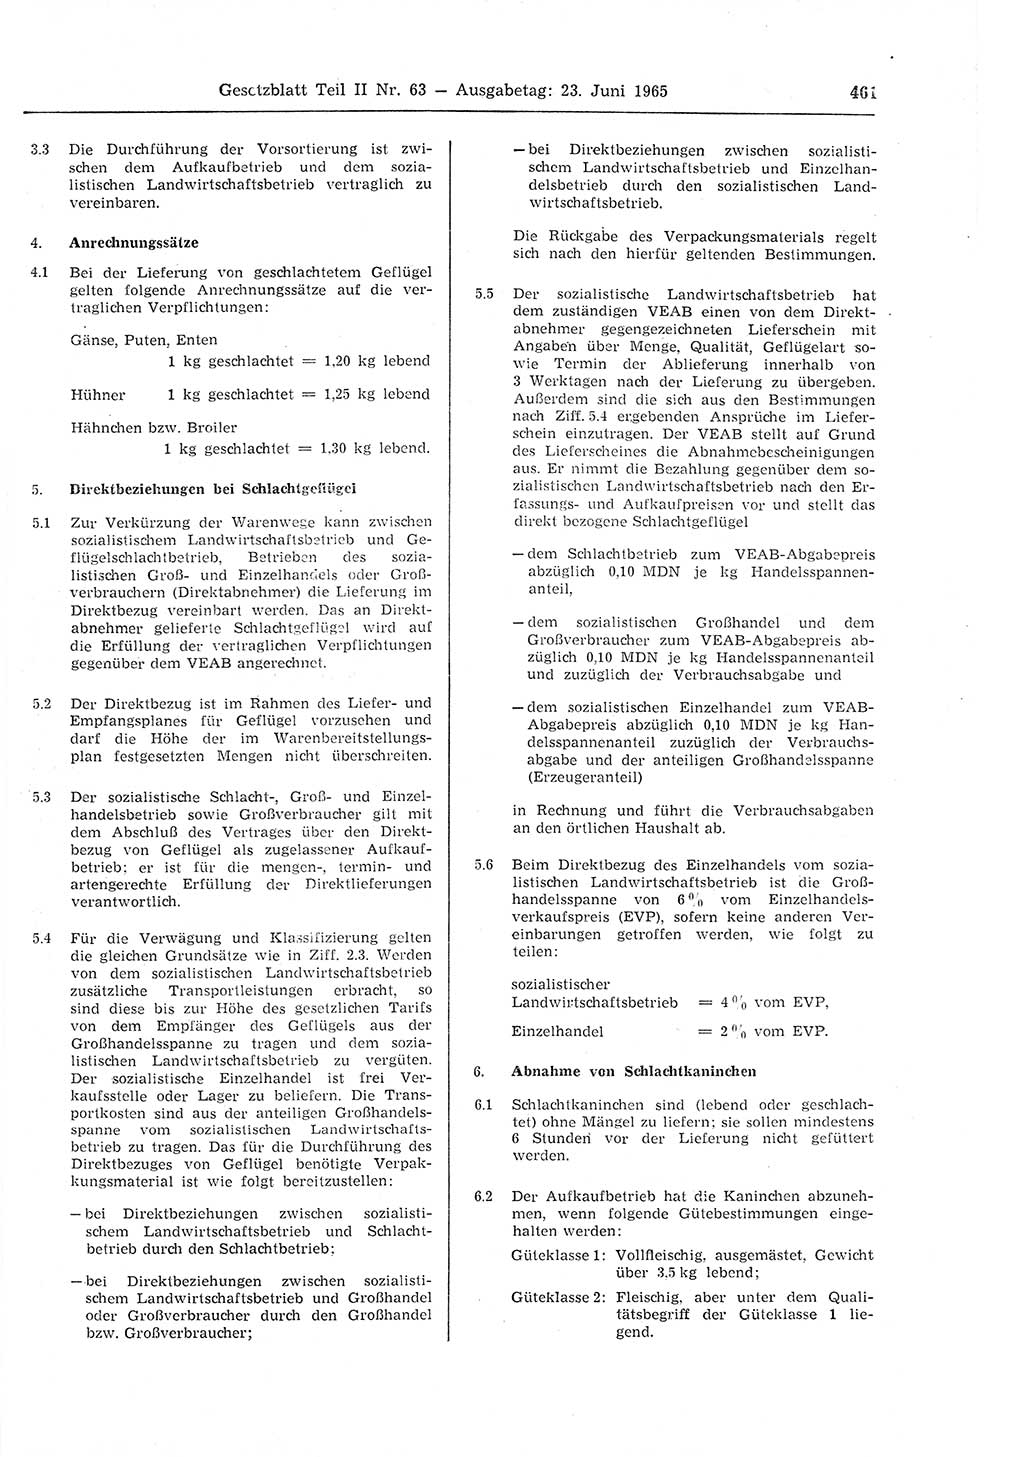 Gesetzblatt (GBl.) der Deutschen Demokratischen Republik (DDR) Teil ⅠⅠ 1965, Seite 461 (GBl. DDR ⅠⅠ 1965, S. 461)